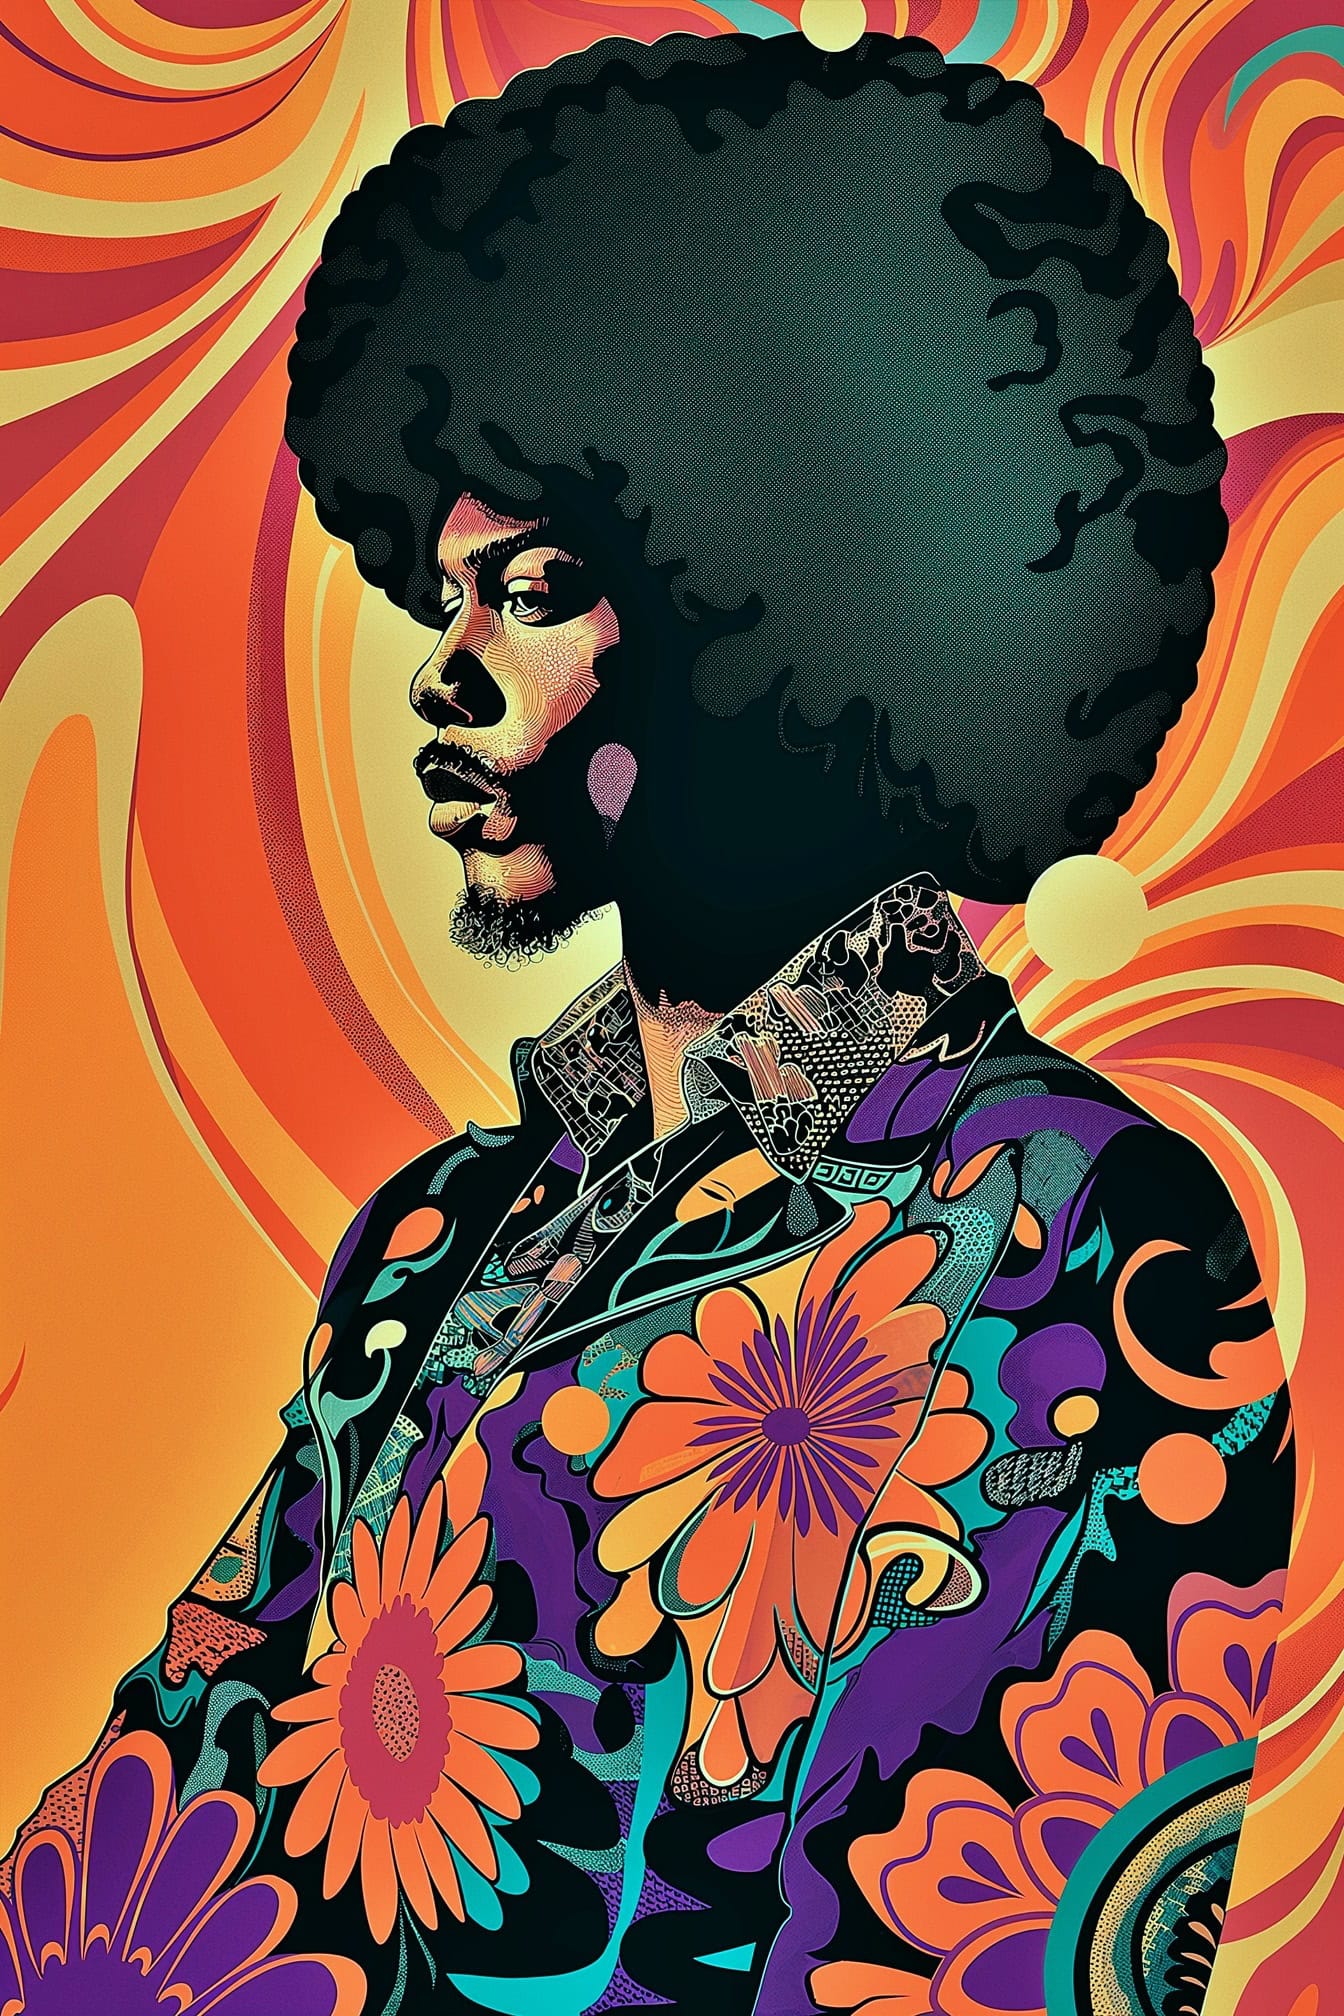 Žiarivý plagát s portrétom Jimiho Hendrixa s veľkým afro účesom a abstraktným pozadím v štýle pop-artu